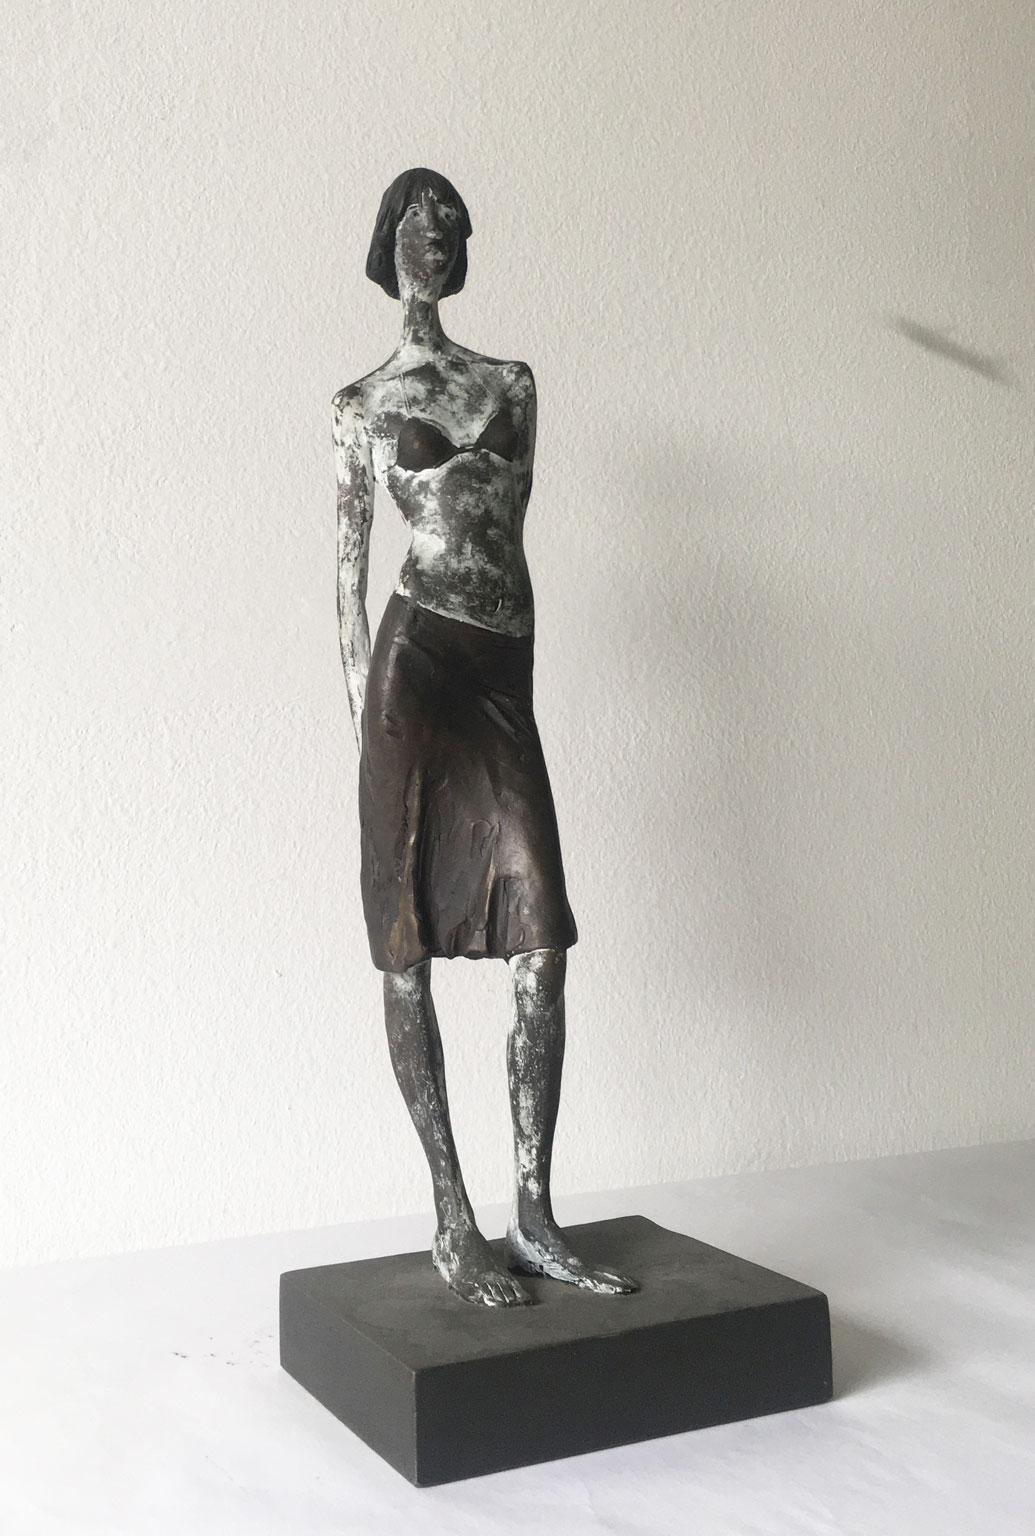 Italy Cast Lost Wax Woman Figurine Bronze Sculpture by Aron Demetz Guardando In Good Condition For Sale In Brescia, IT